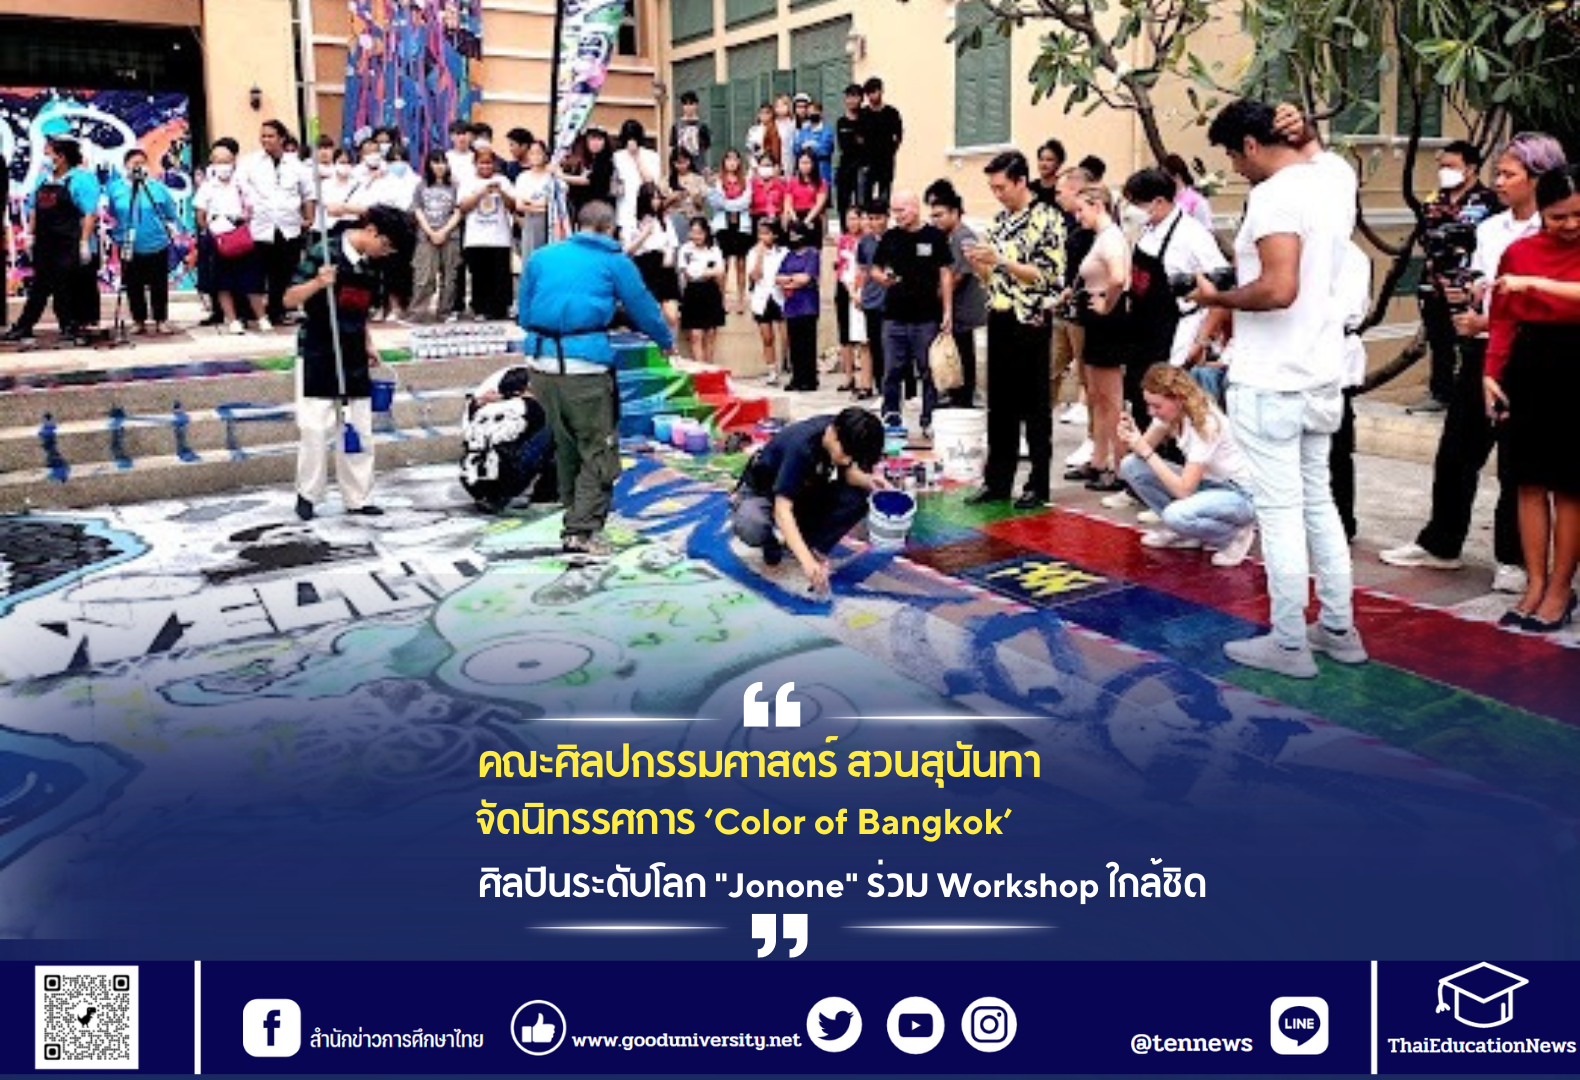 คณะศิลปกรรมศาสตร์ สวนสุนันทา จัดนิทรรศการ Color of Bangkok ศิลปินระดับโลก “Jonone” ร่วม Workshop ใกล้ชิด